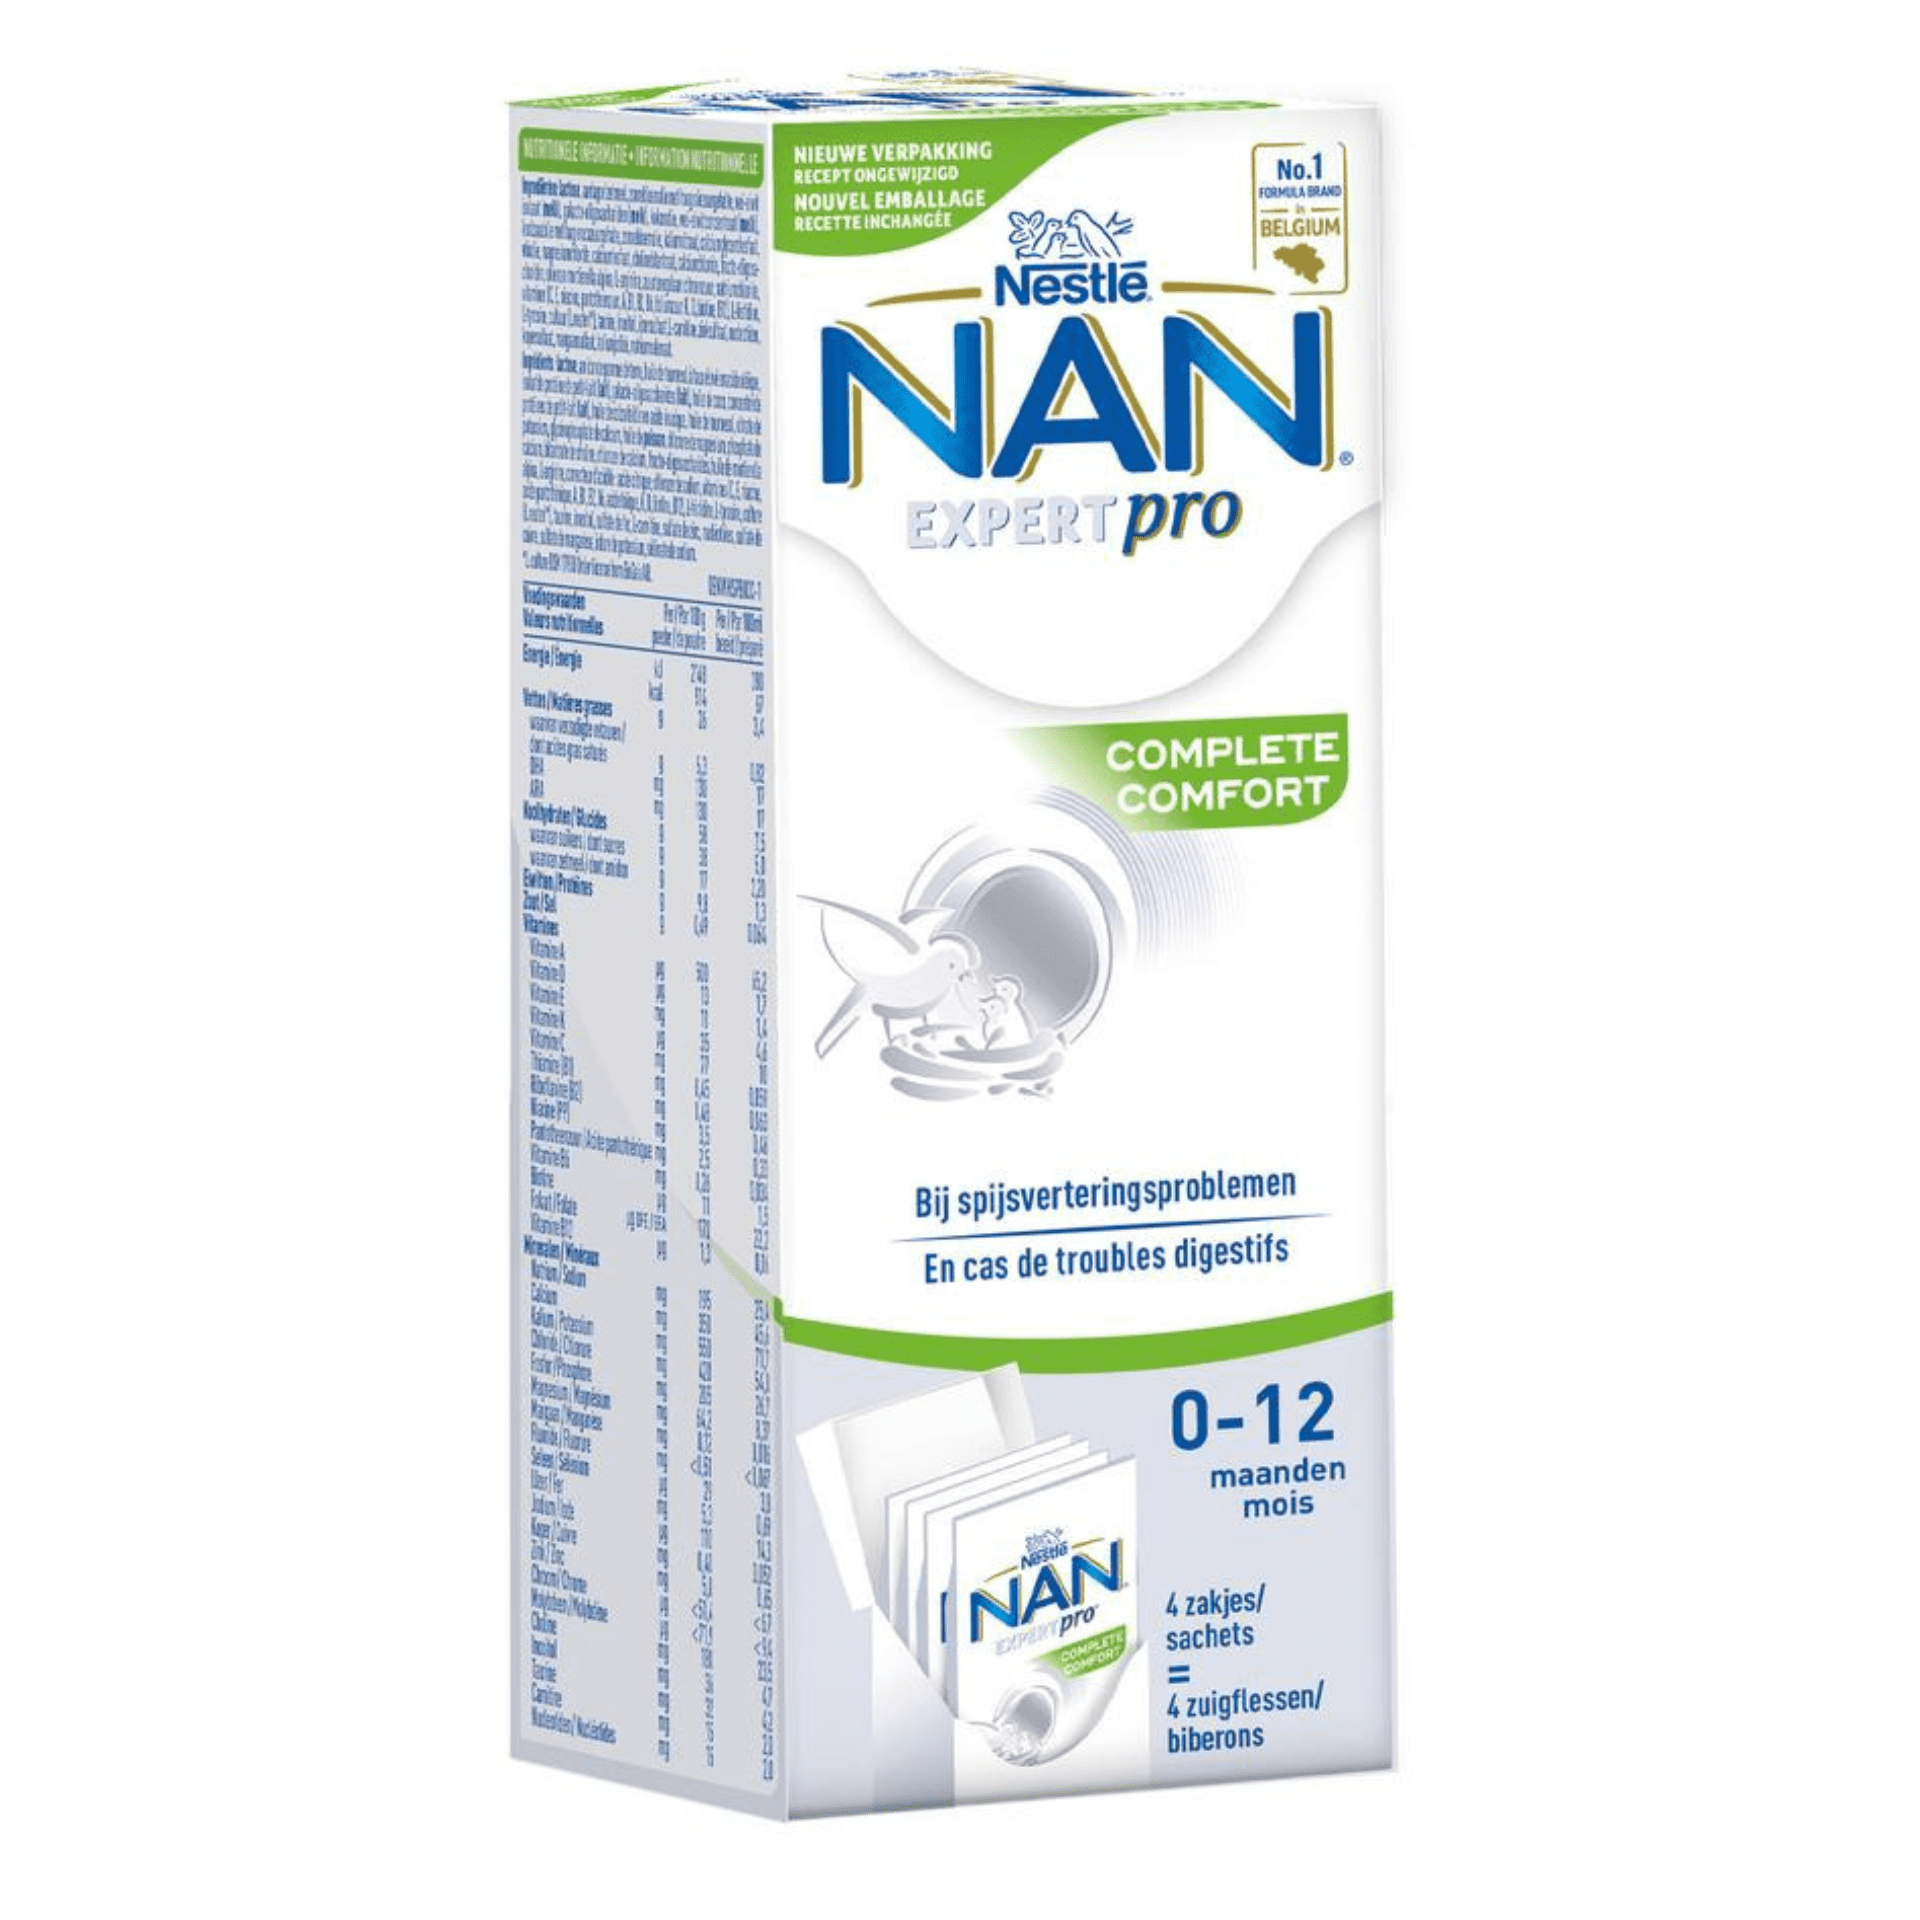 Nan Complete Comfort Zuigelingenmelk